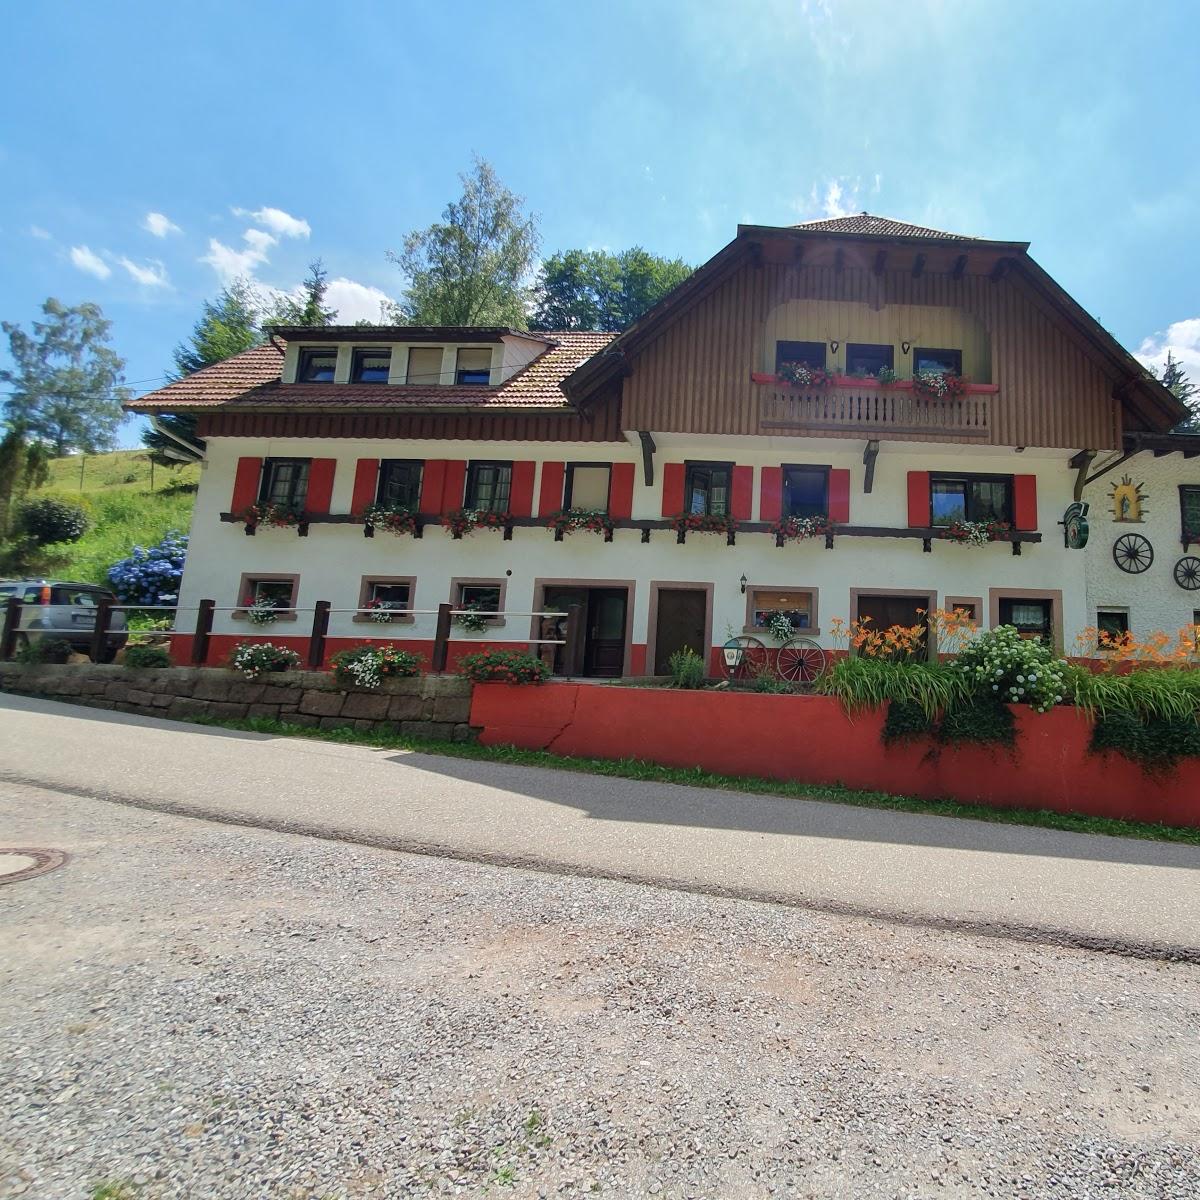 Restaurant "Gasthof Zuwälder Stüble" in  Oberharmersbach